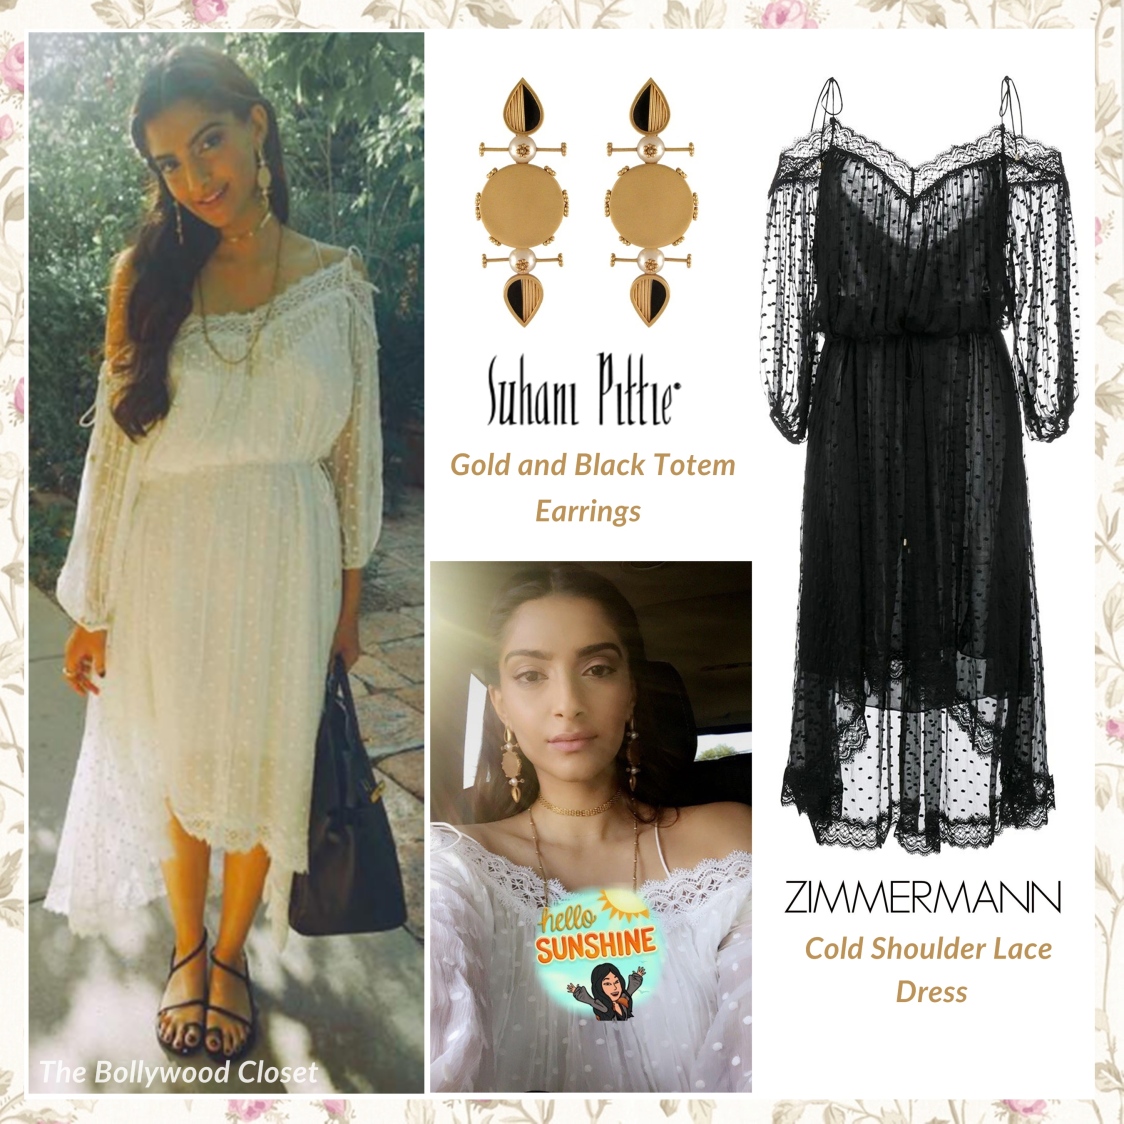 sonam-kapoor-in-zimmermann-dress